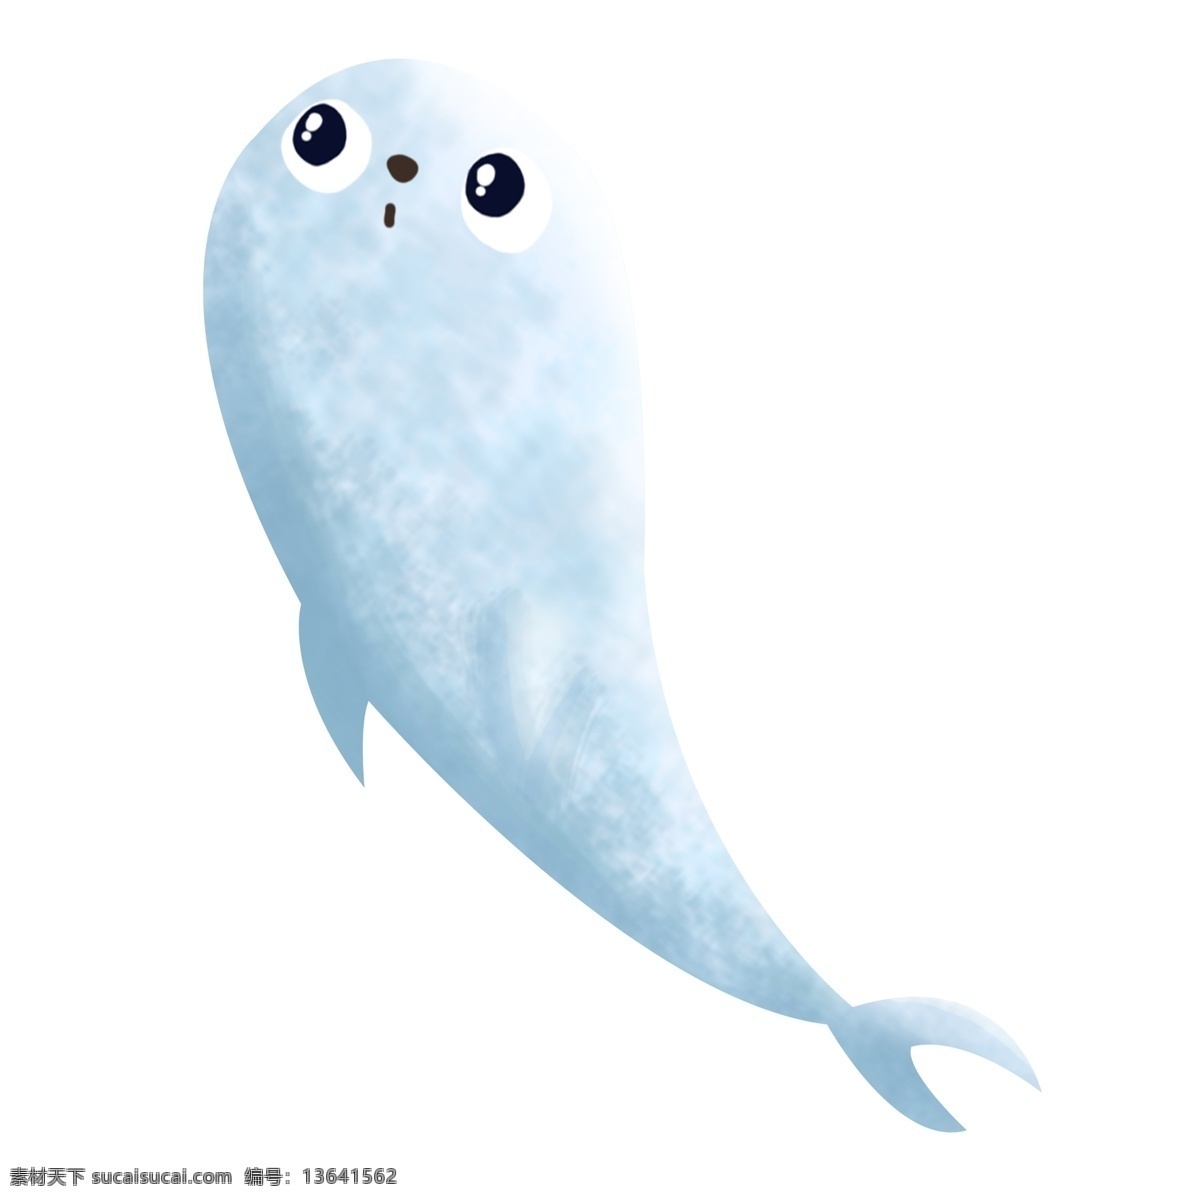 海洋 大海 可爱 卡通 生物 小海 豹 手绘 插画 海豹 海里 海底 深海 清凉 蓝色 萌